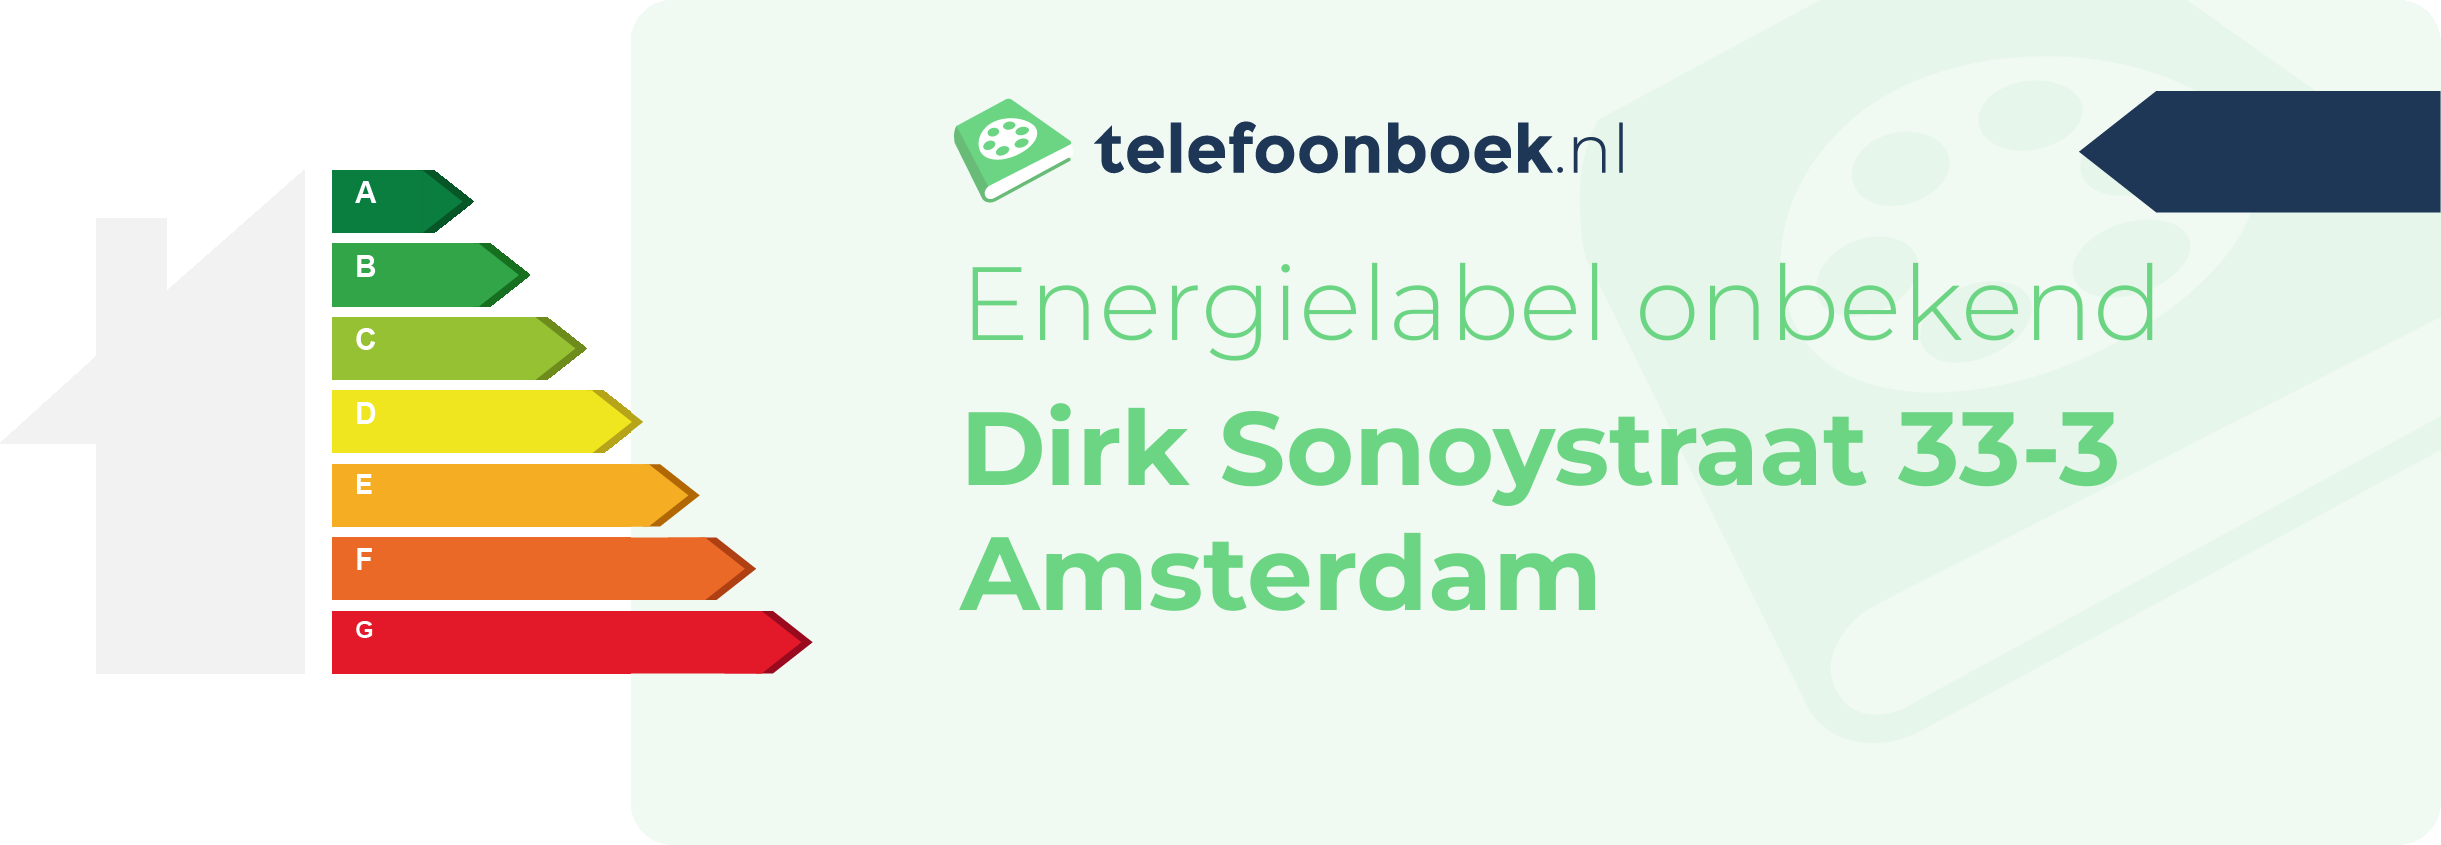 Energielabel Dirk Sonoystraat 33-3 Amsterdam